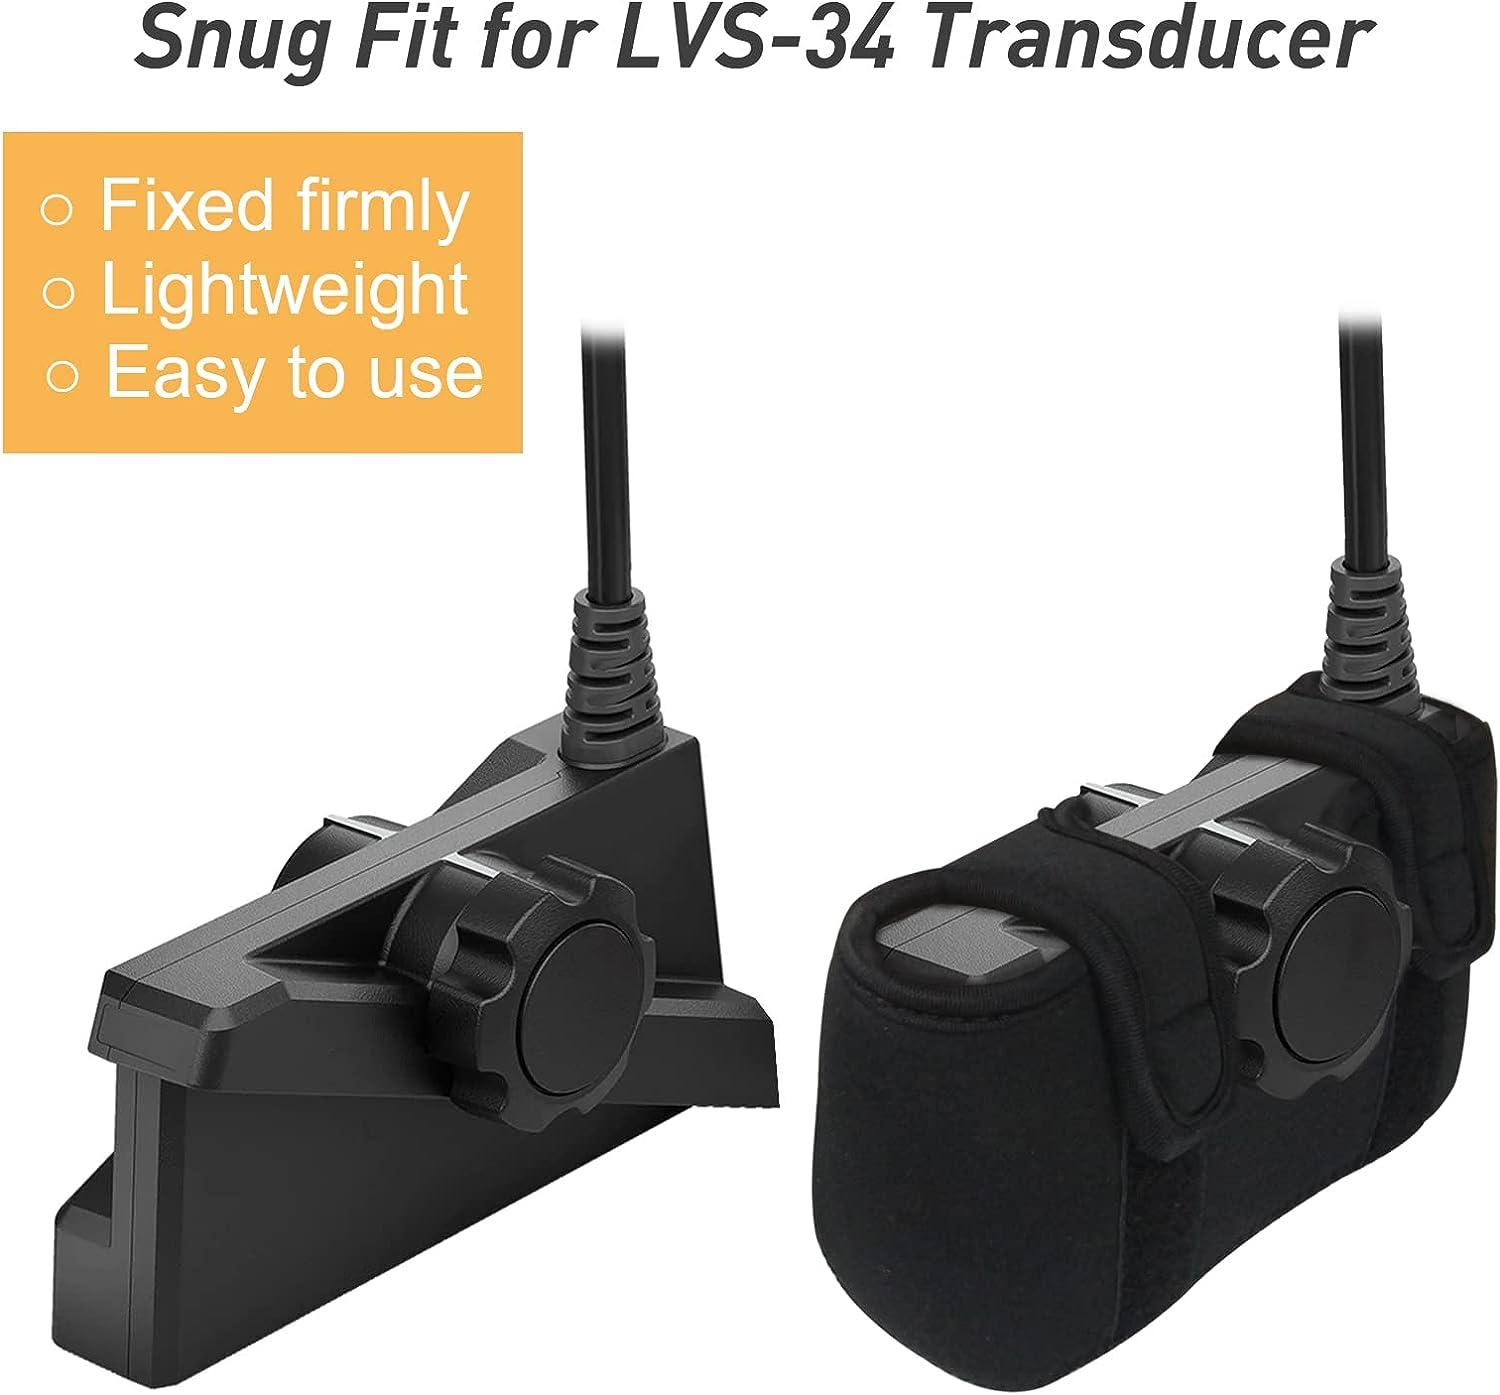 NEW Garmin Livescope LVS34 Transducer Travel Cover LVS 34